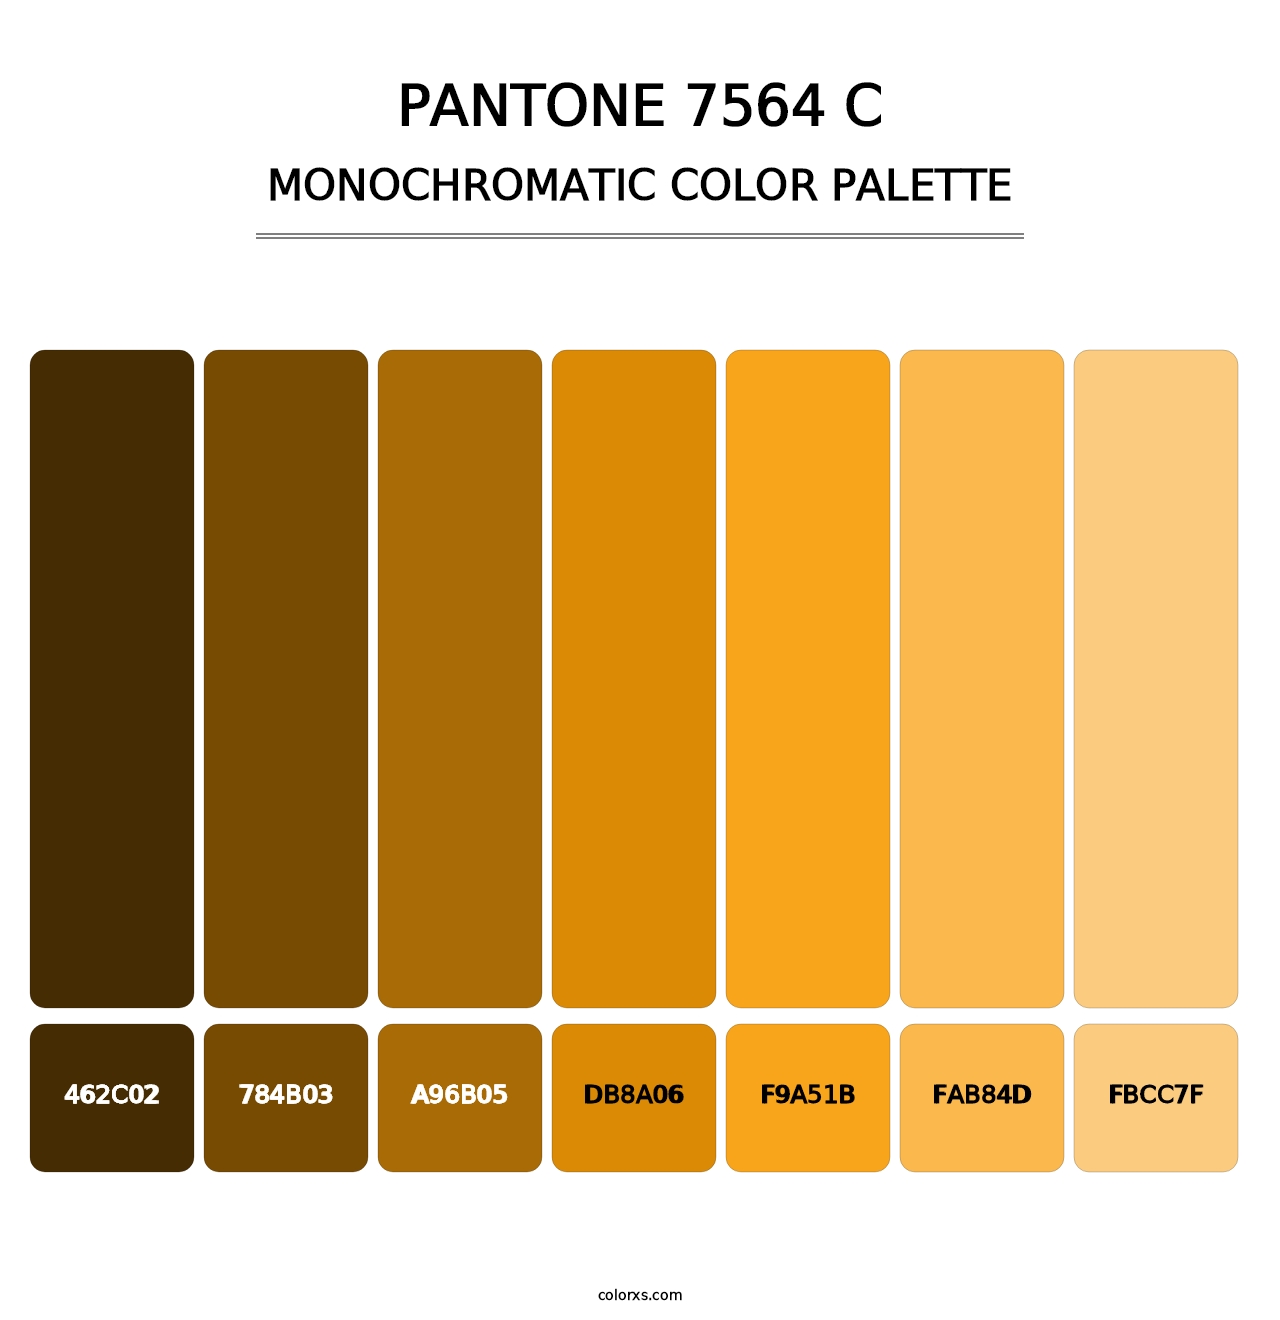 PANTONE 7564 C - Monochromatic Color Palette